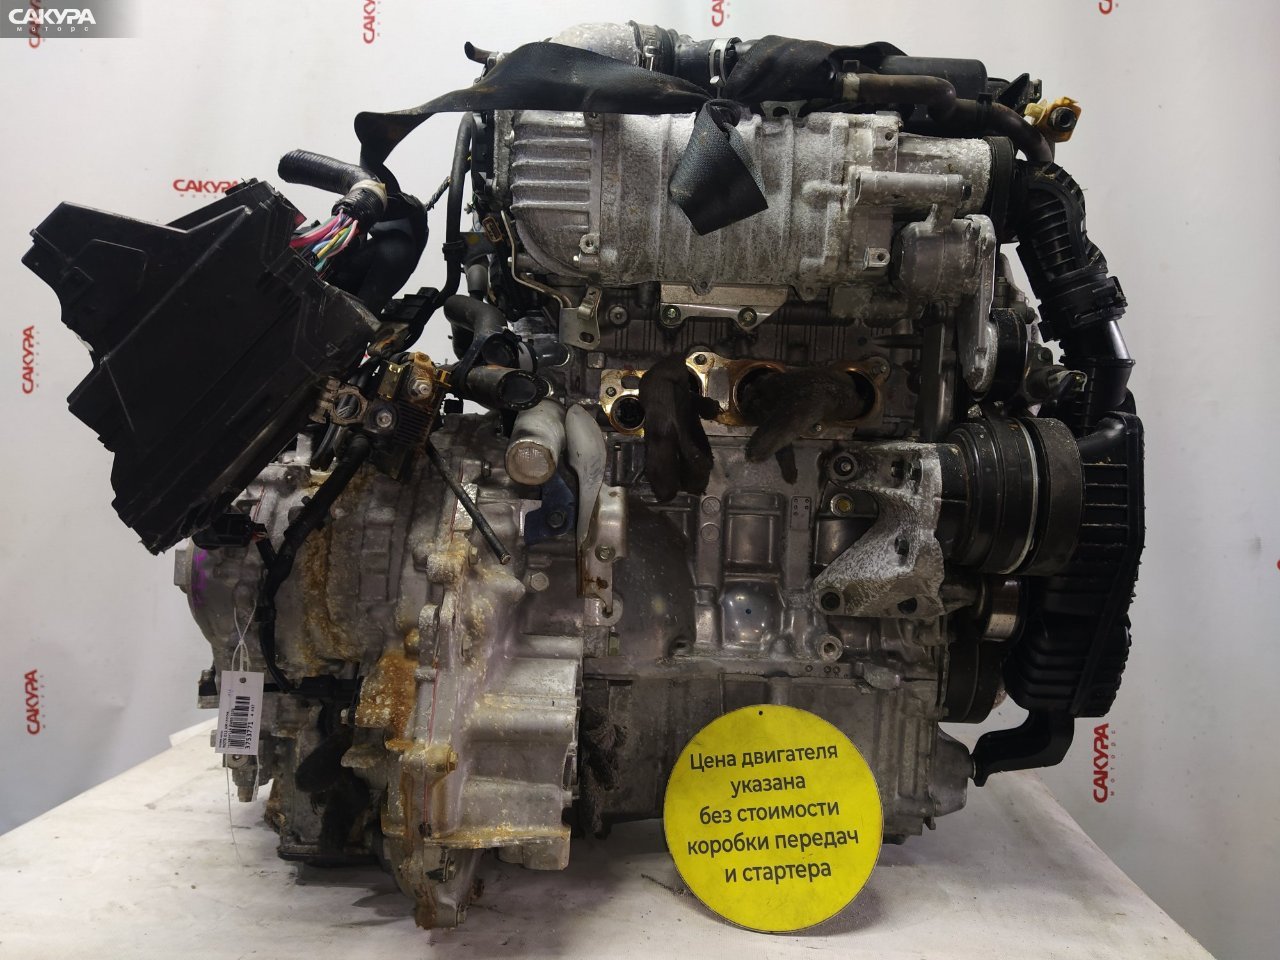 Двигатель Nissan Note E12 HR12DDR: купить в Сакура Красноярск.